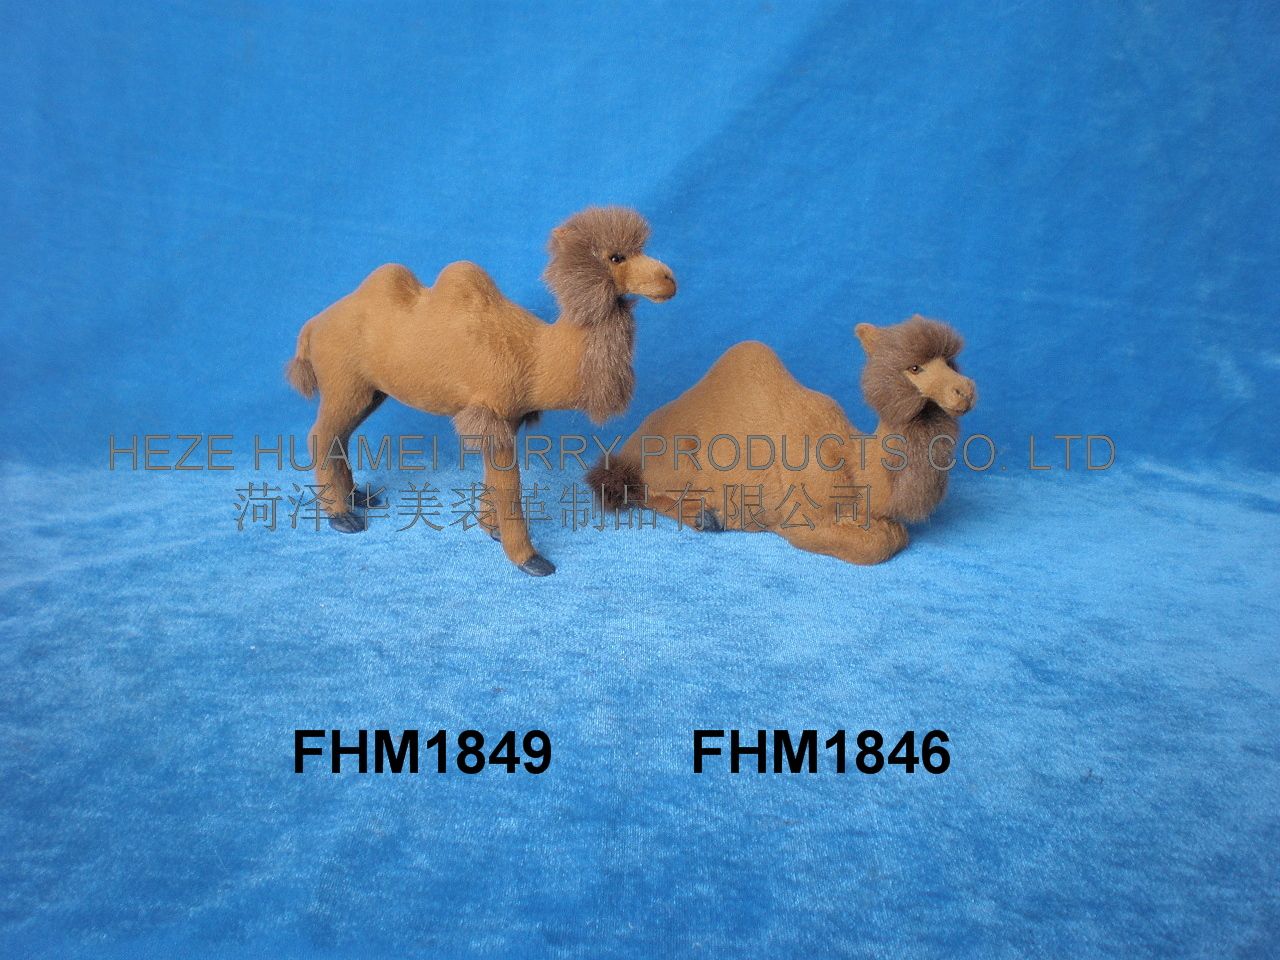 FHM1849   FHM1846,菏泽宇航裘革制品有限公司专业仿真皮毛动物生产厂家